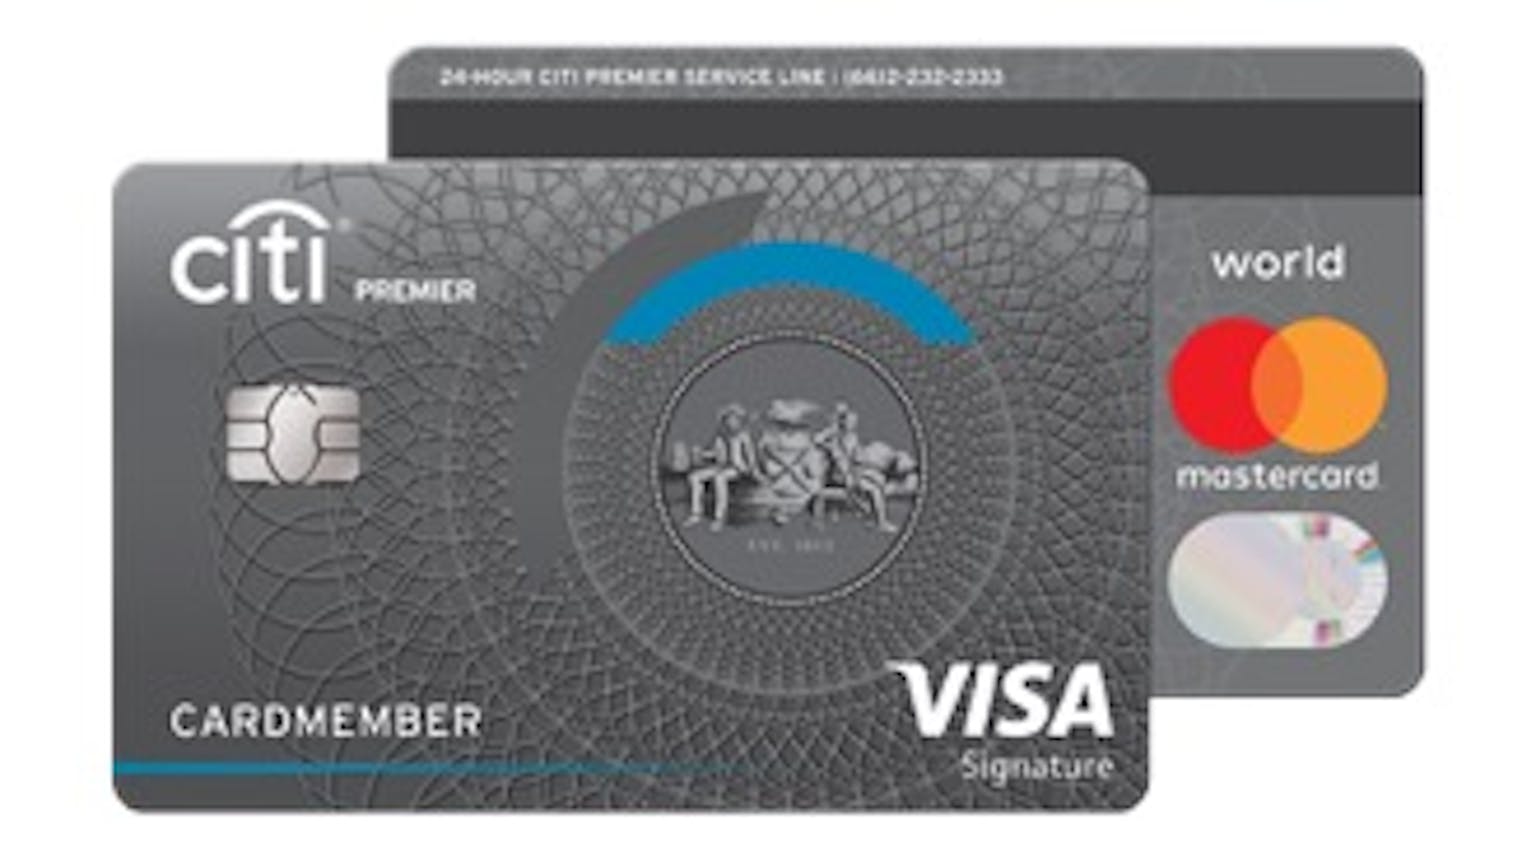 บัตรเครดิตซิตี้ พรีเมียร์ | ธนาคารซิตี้แบงก์ | Moneyduck Thailand